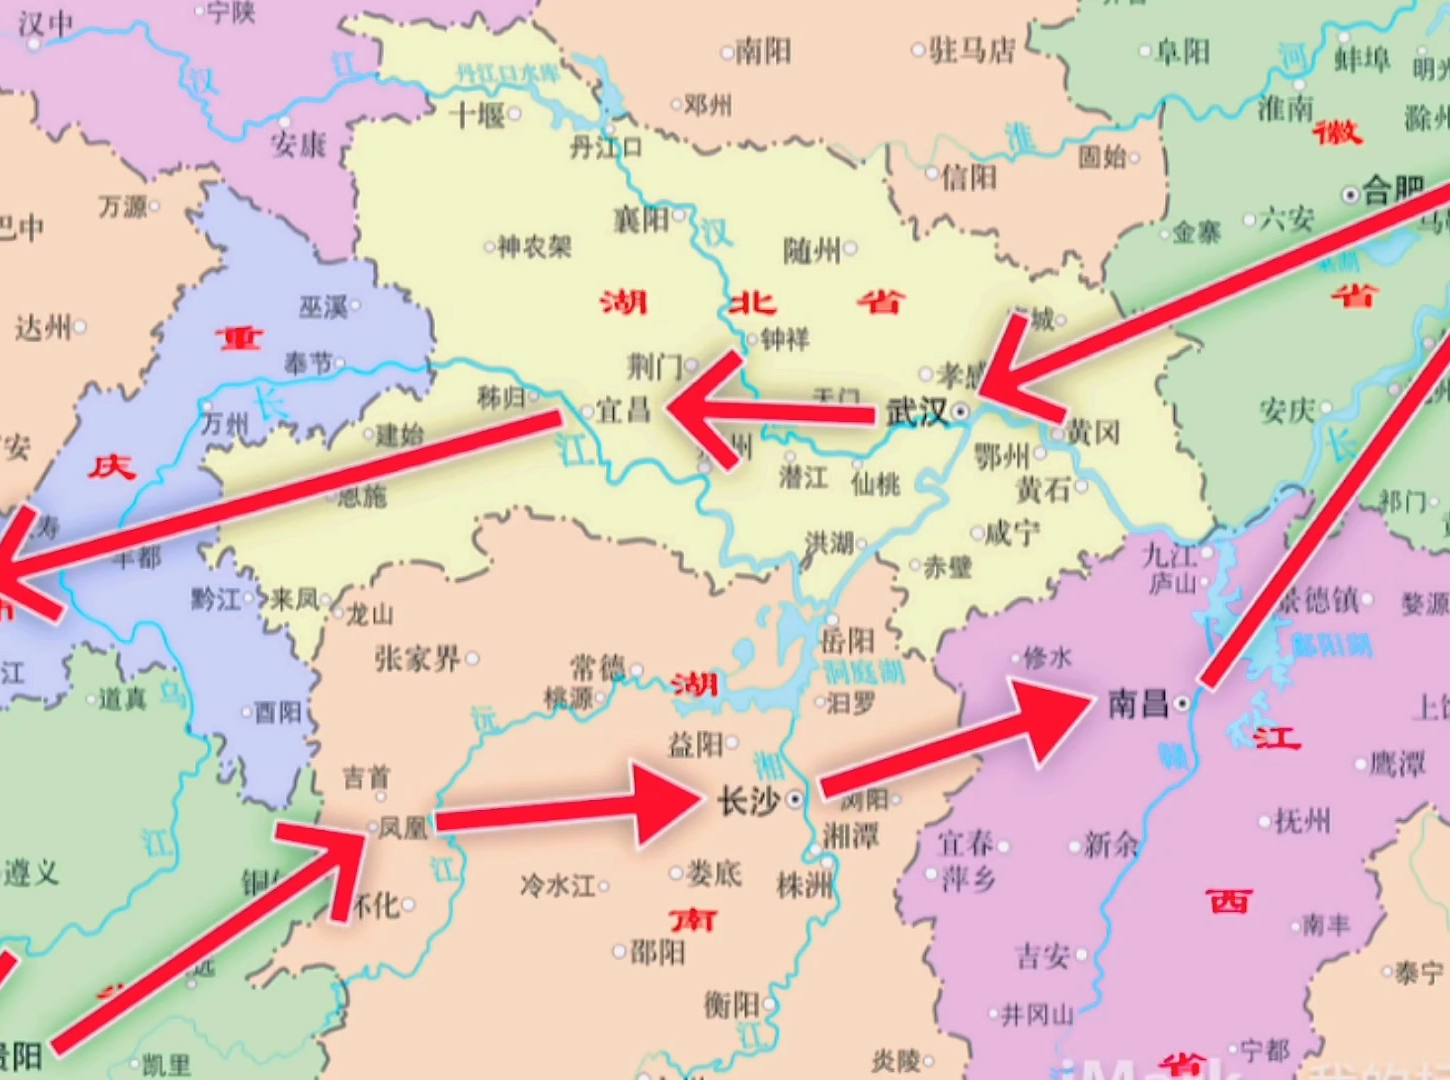 继去年11月长达15天的东南沿海自驾游后，下周起将再开启一次以长江为主题的超长自驾游。这次的自驾企划